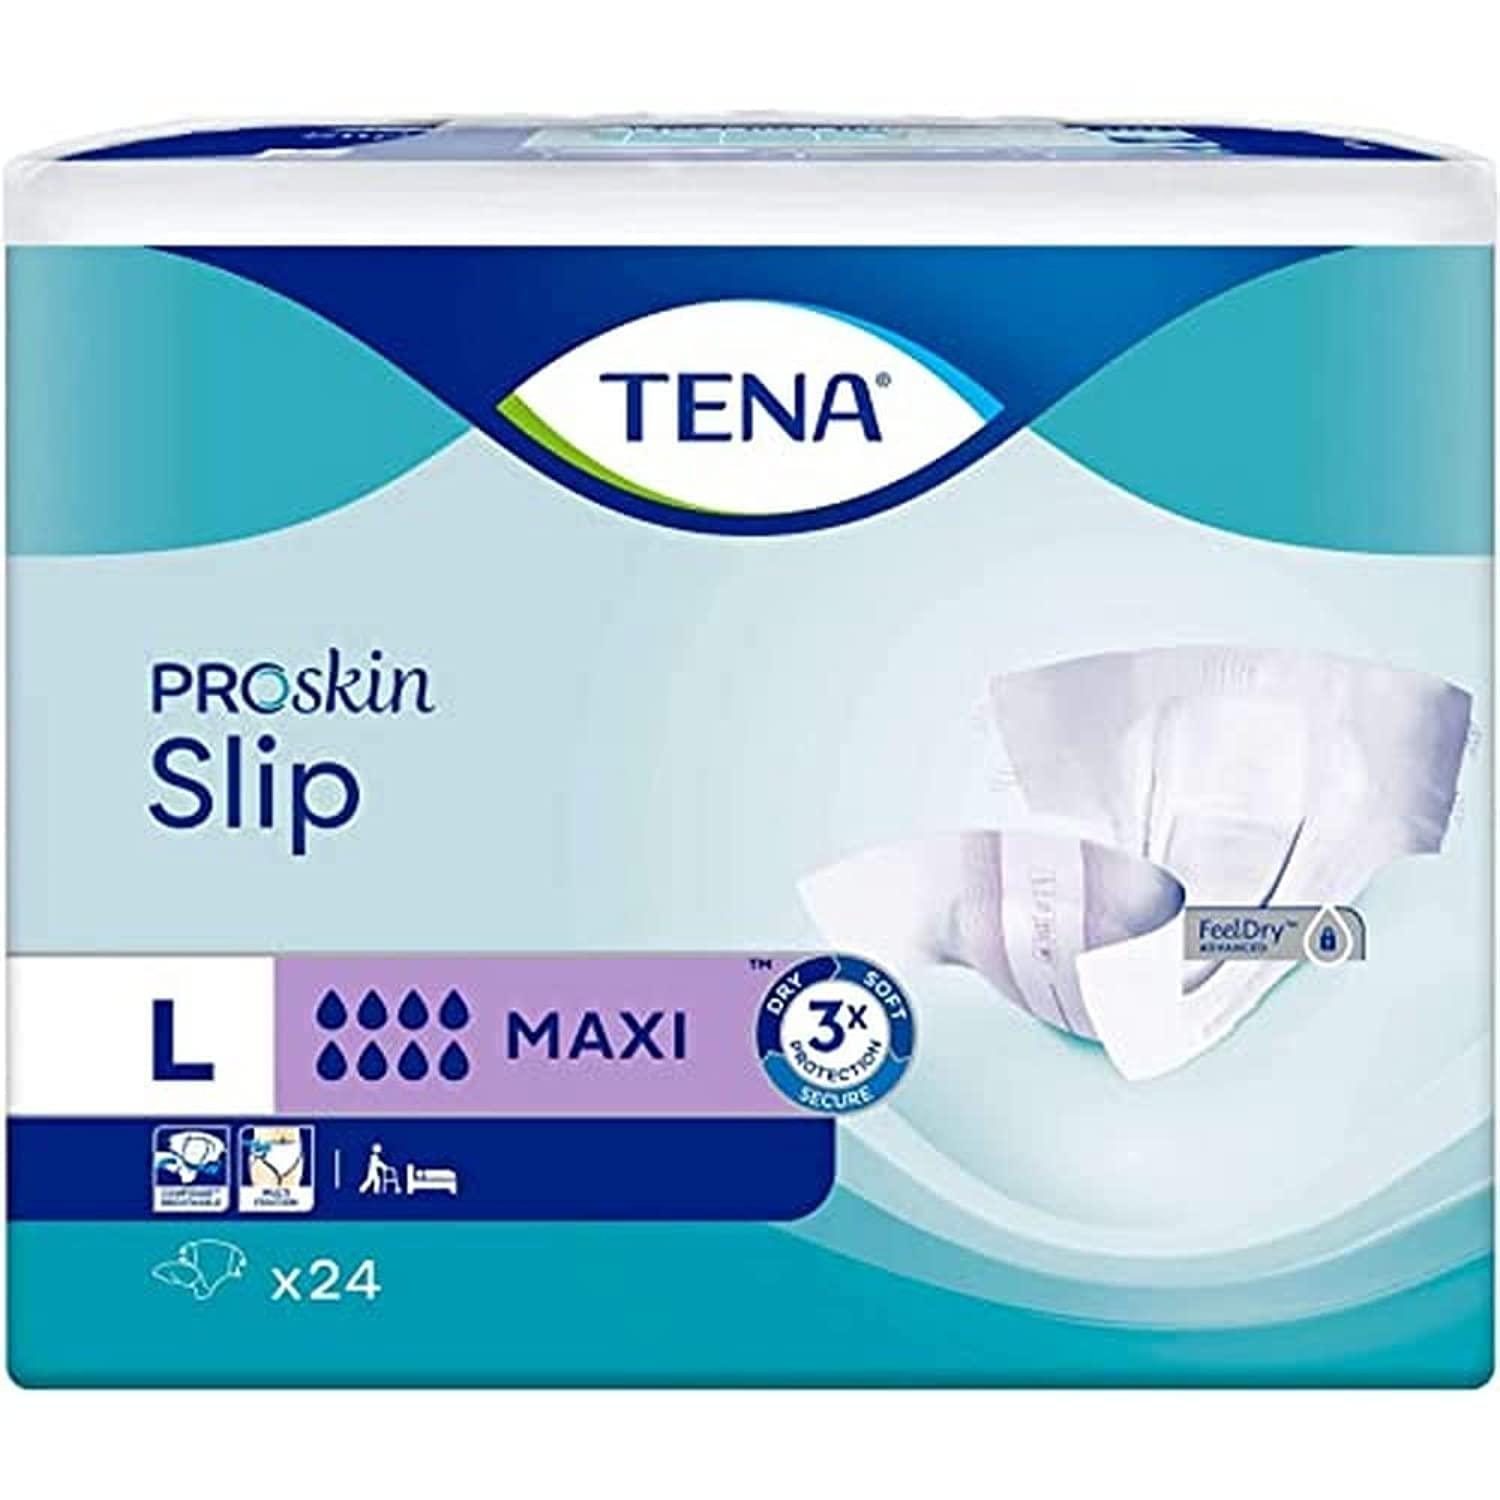 Buy Tena Slip Super L (28 pieces)